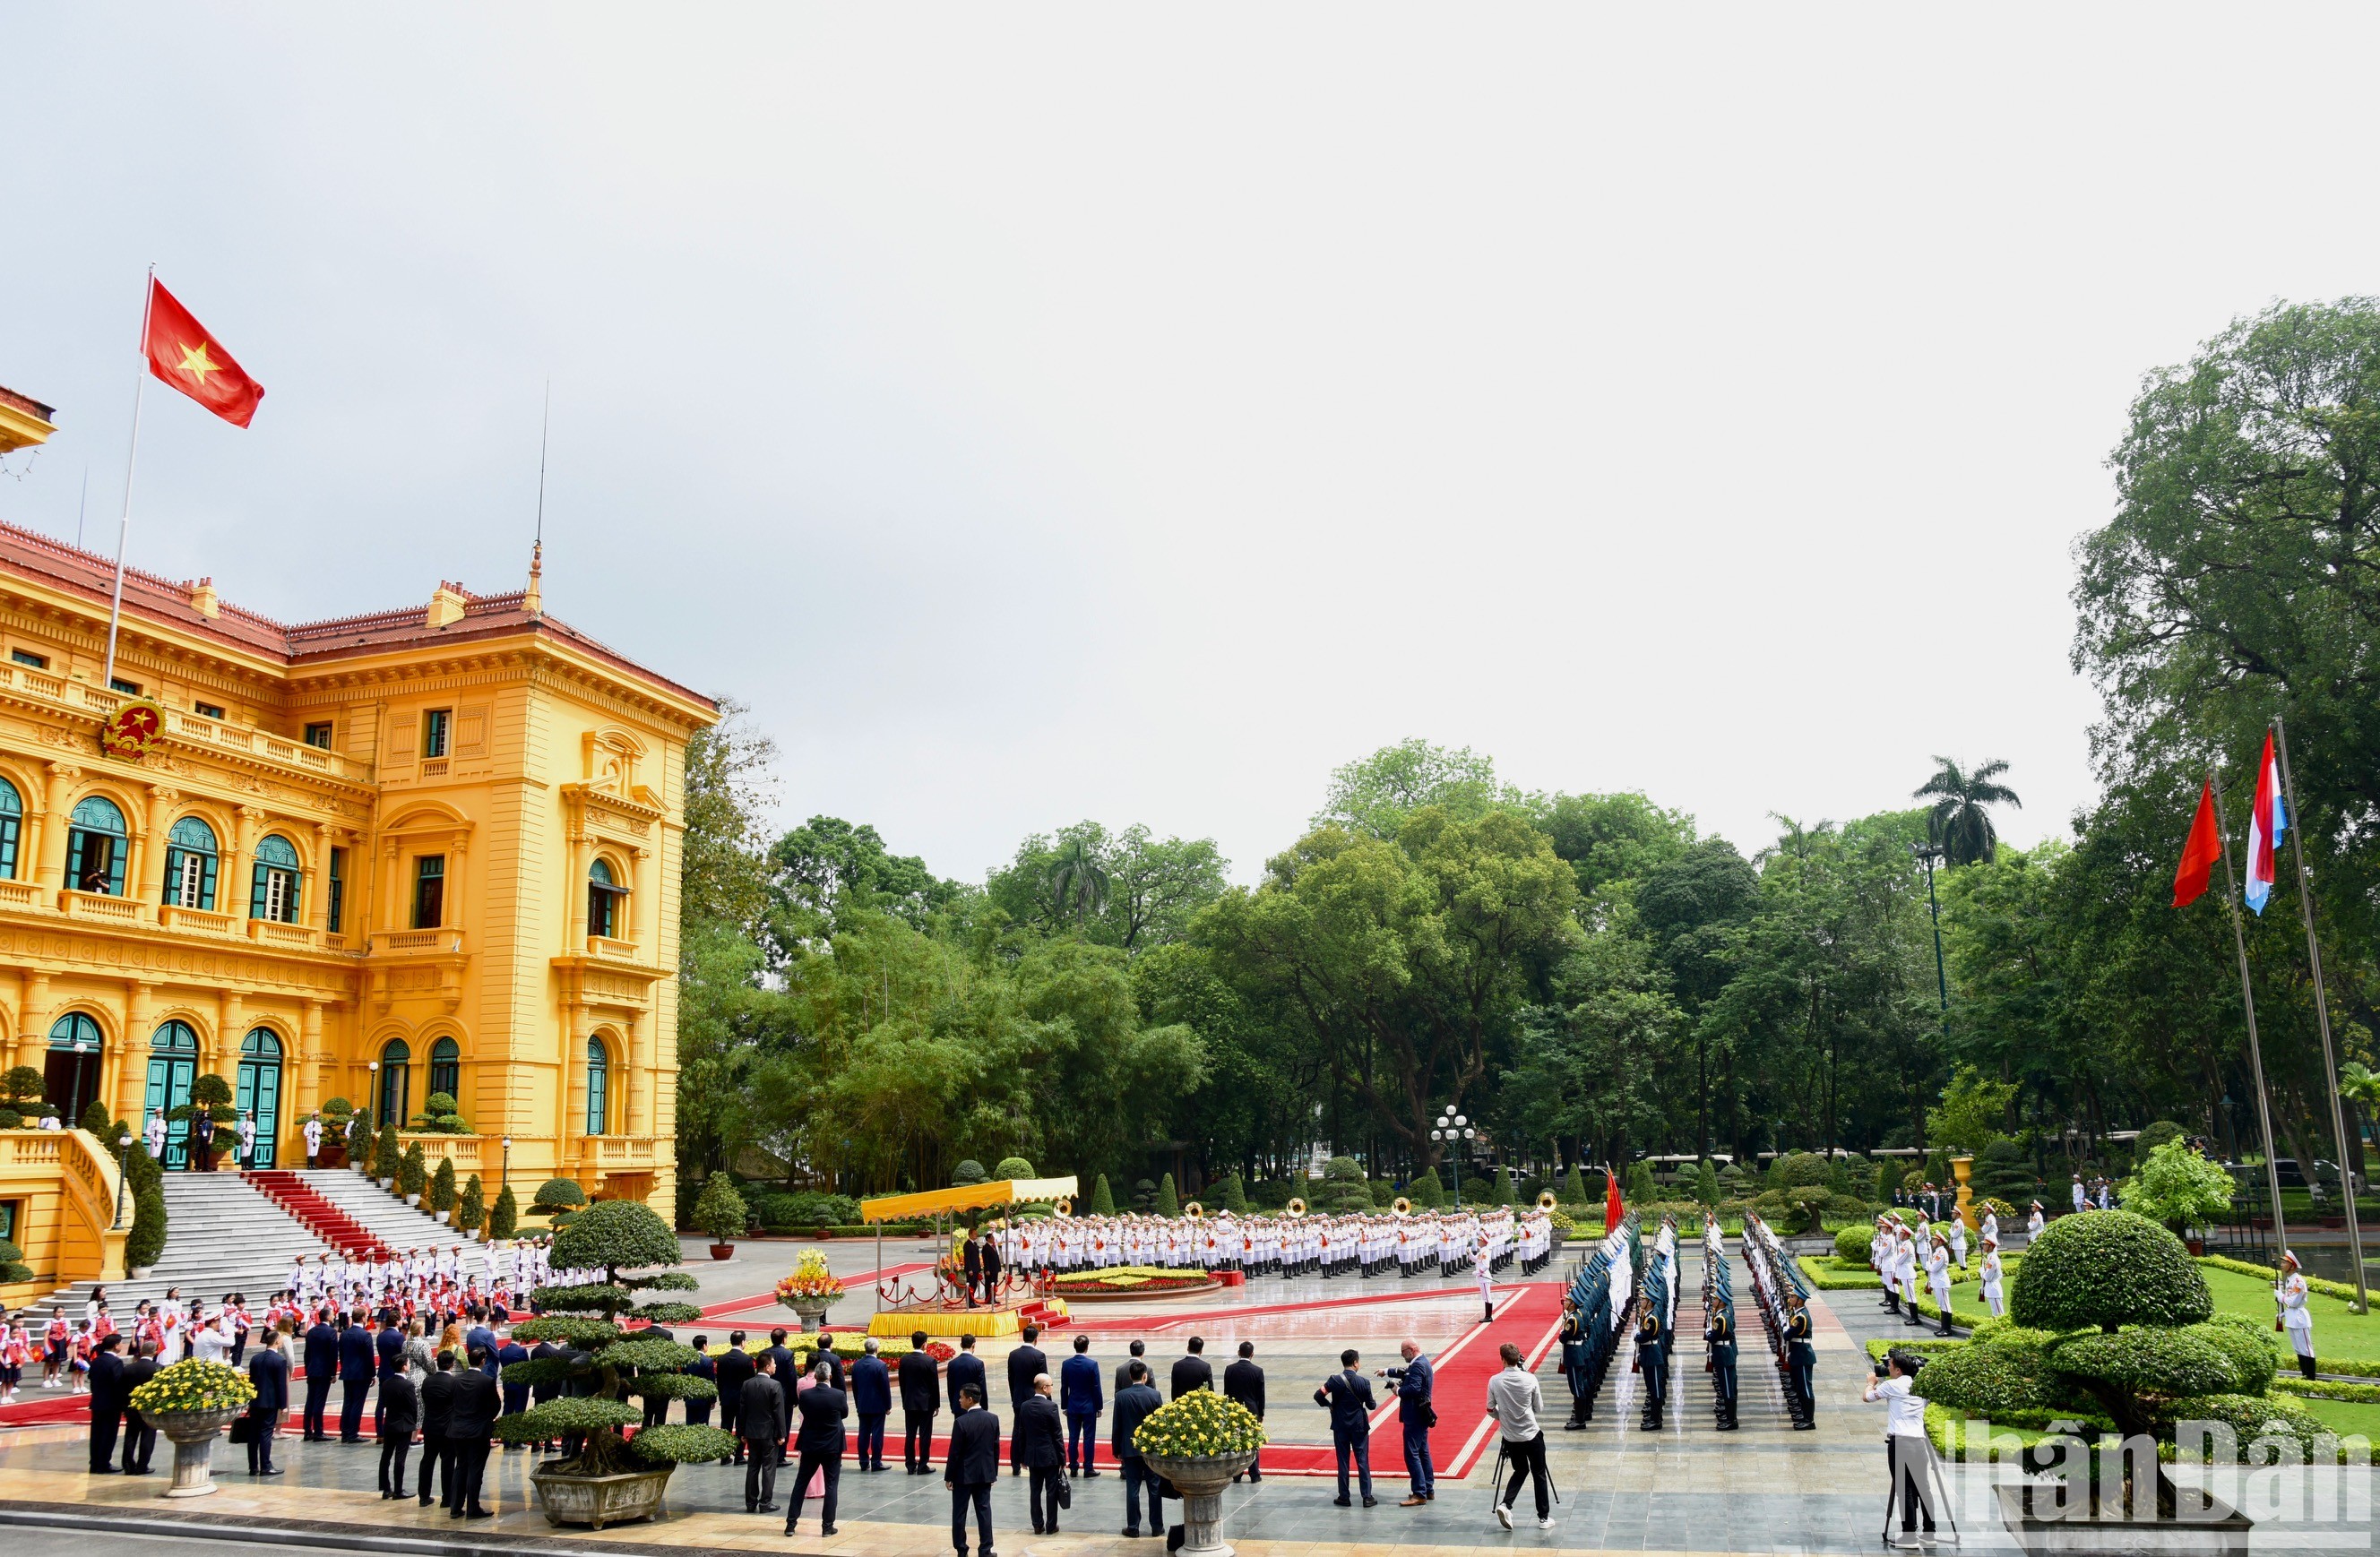 卢森堡大公国首相格扎维埃·贝泰尔迎接仪式在主席府举行。(陈海 摄)